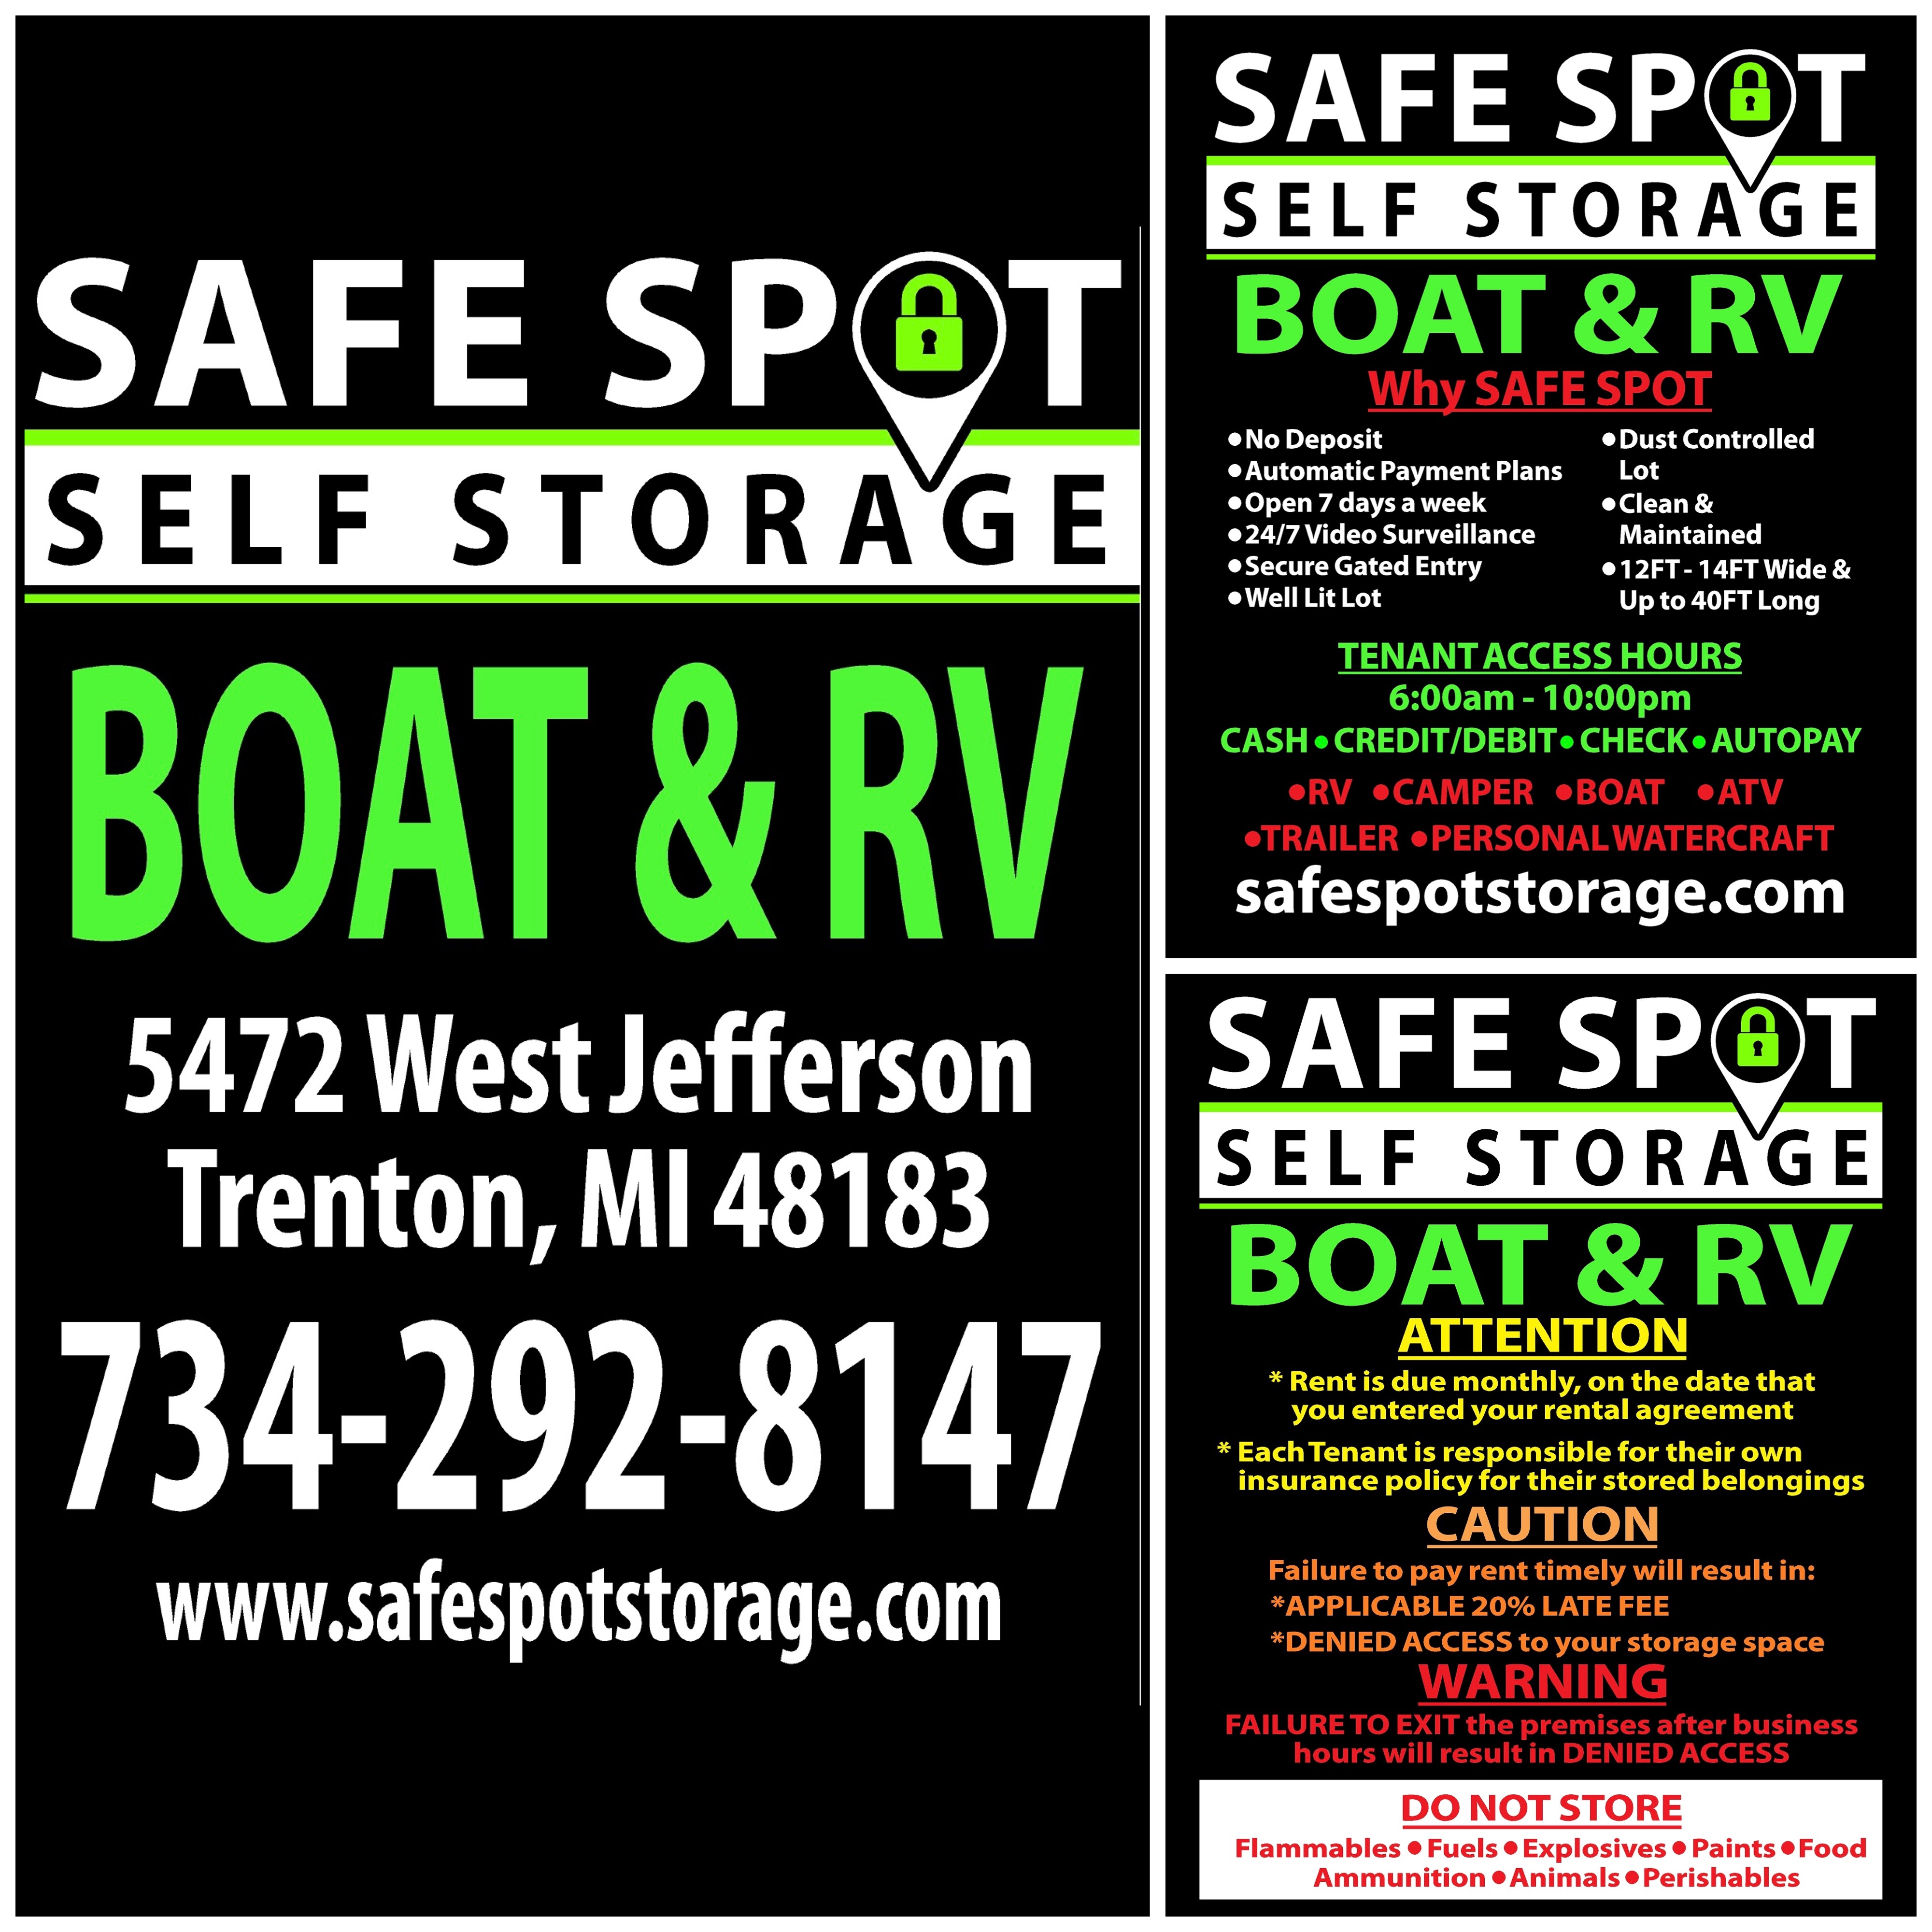 Boat & RV Storage!